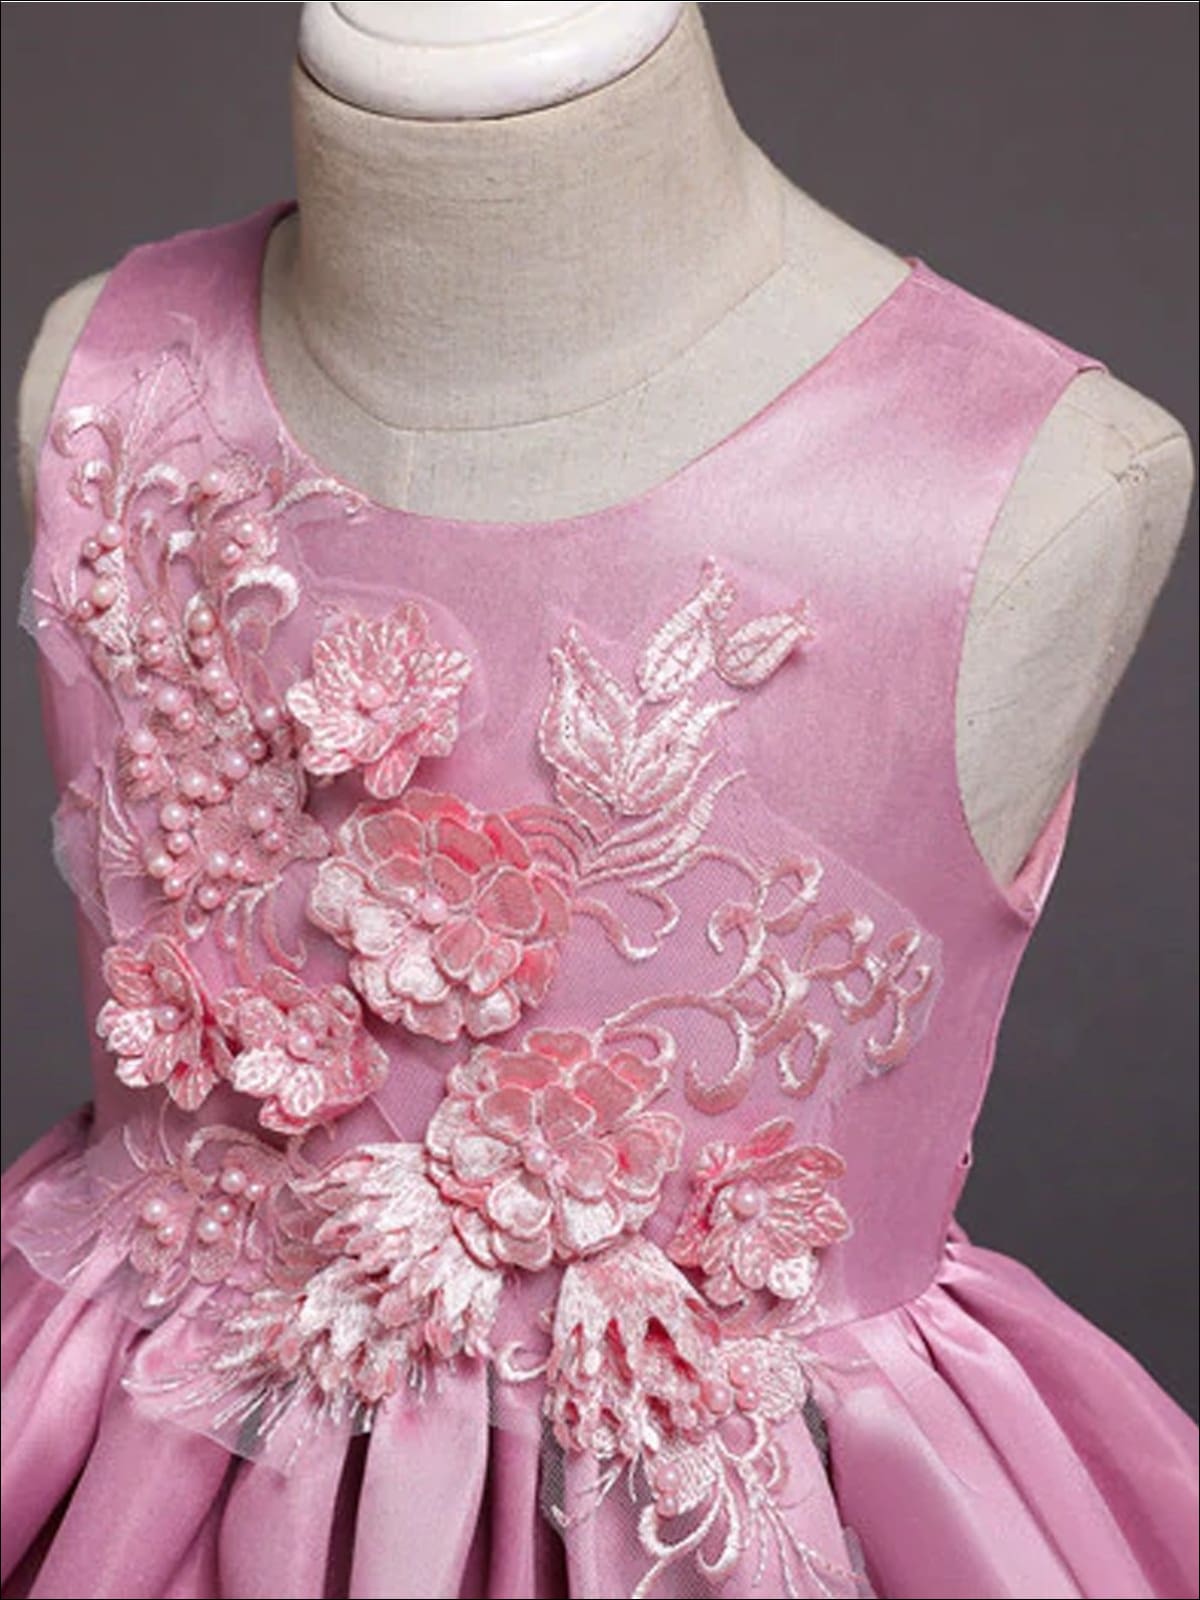 Girls Special Occasion Dress | Toddler Embellished Hi-Lo Formal Dress